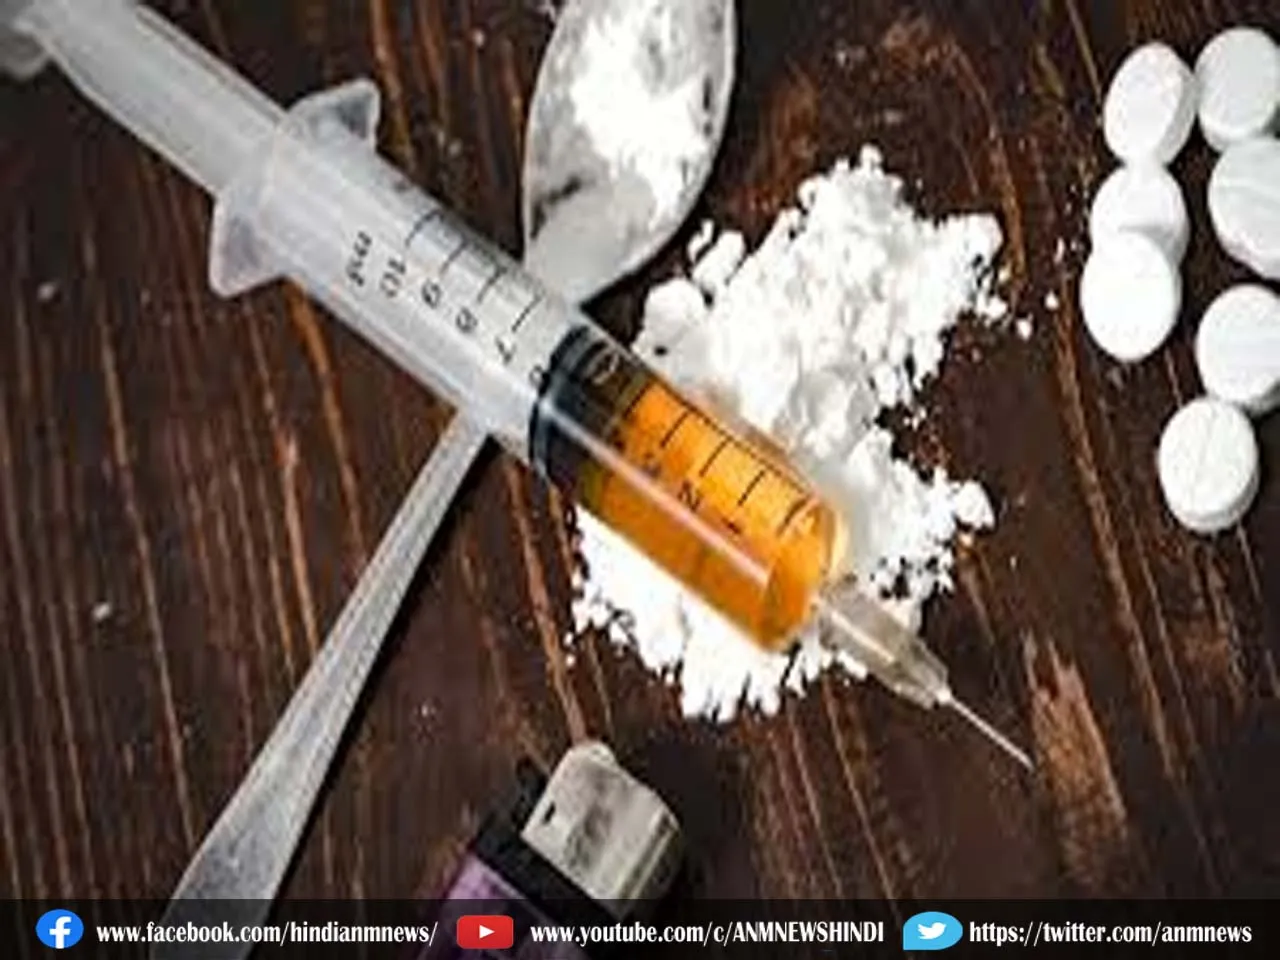 Drug smuggling : 45 करोड़ की नशीली दवाएं जब्त, ड्रग तस्कर गिरफ्तार